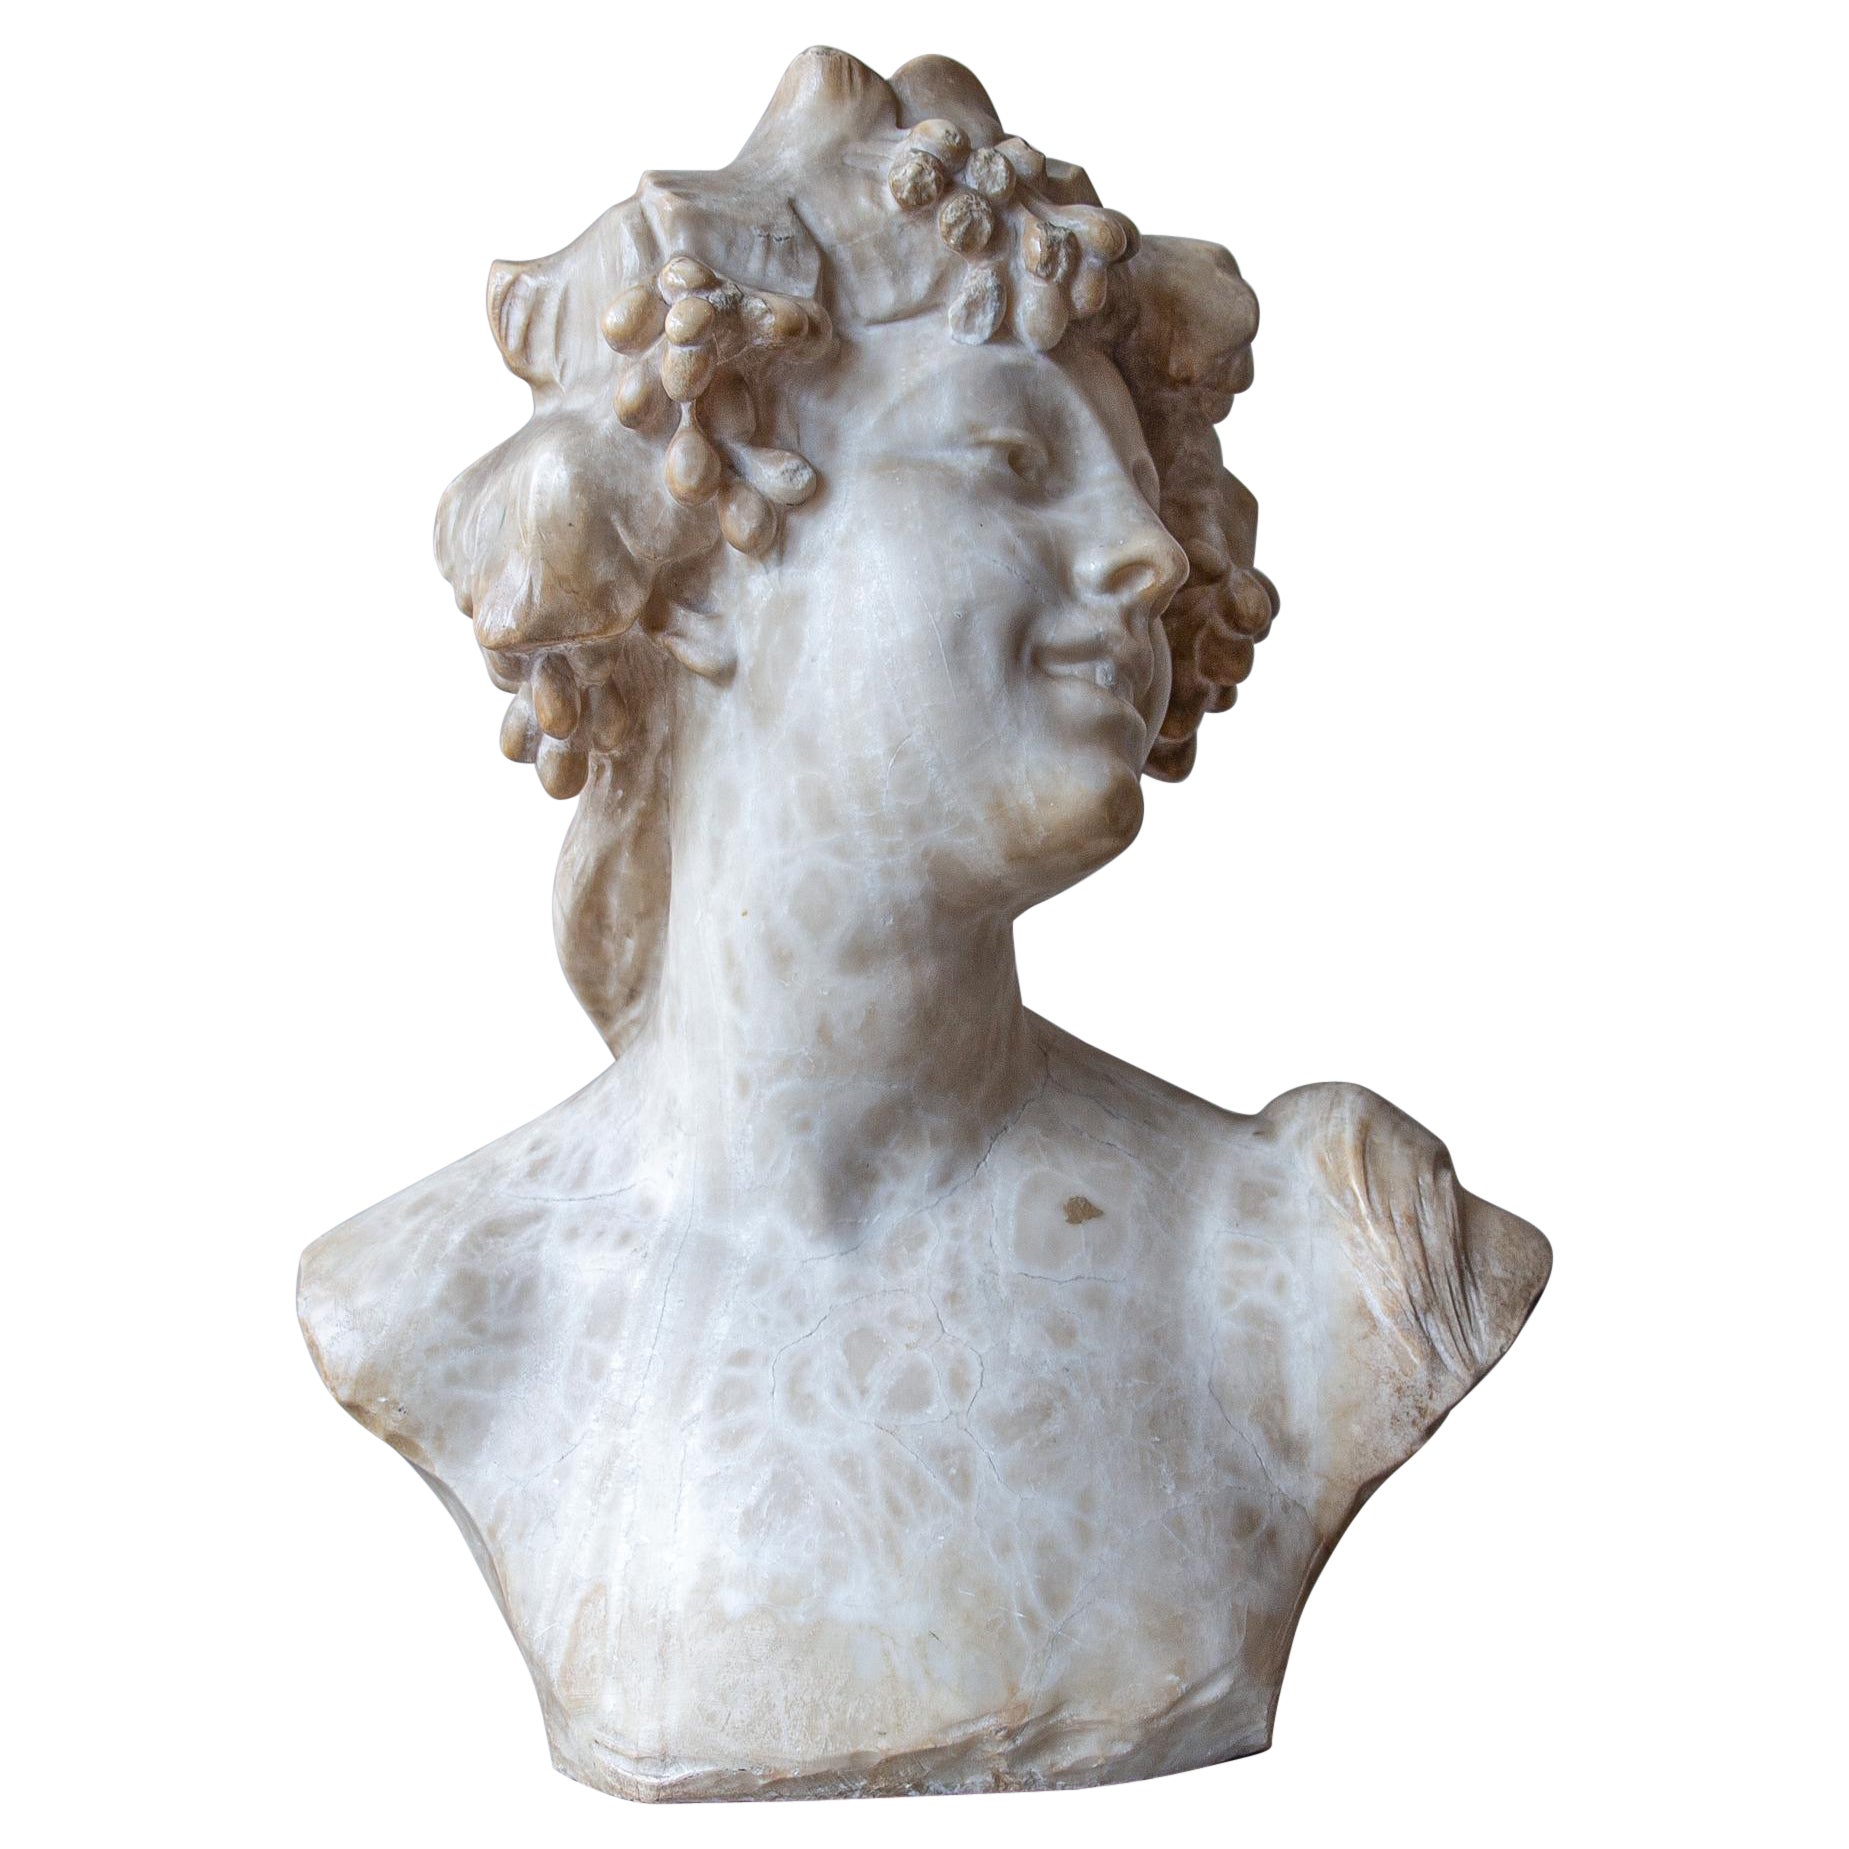 An Ecstatic Bacchanalian figure in alabaster by Jef Lambeaux, early 20th century